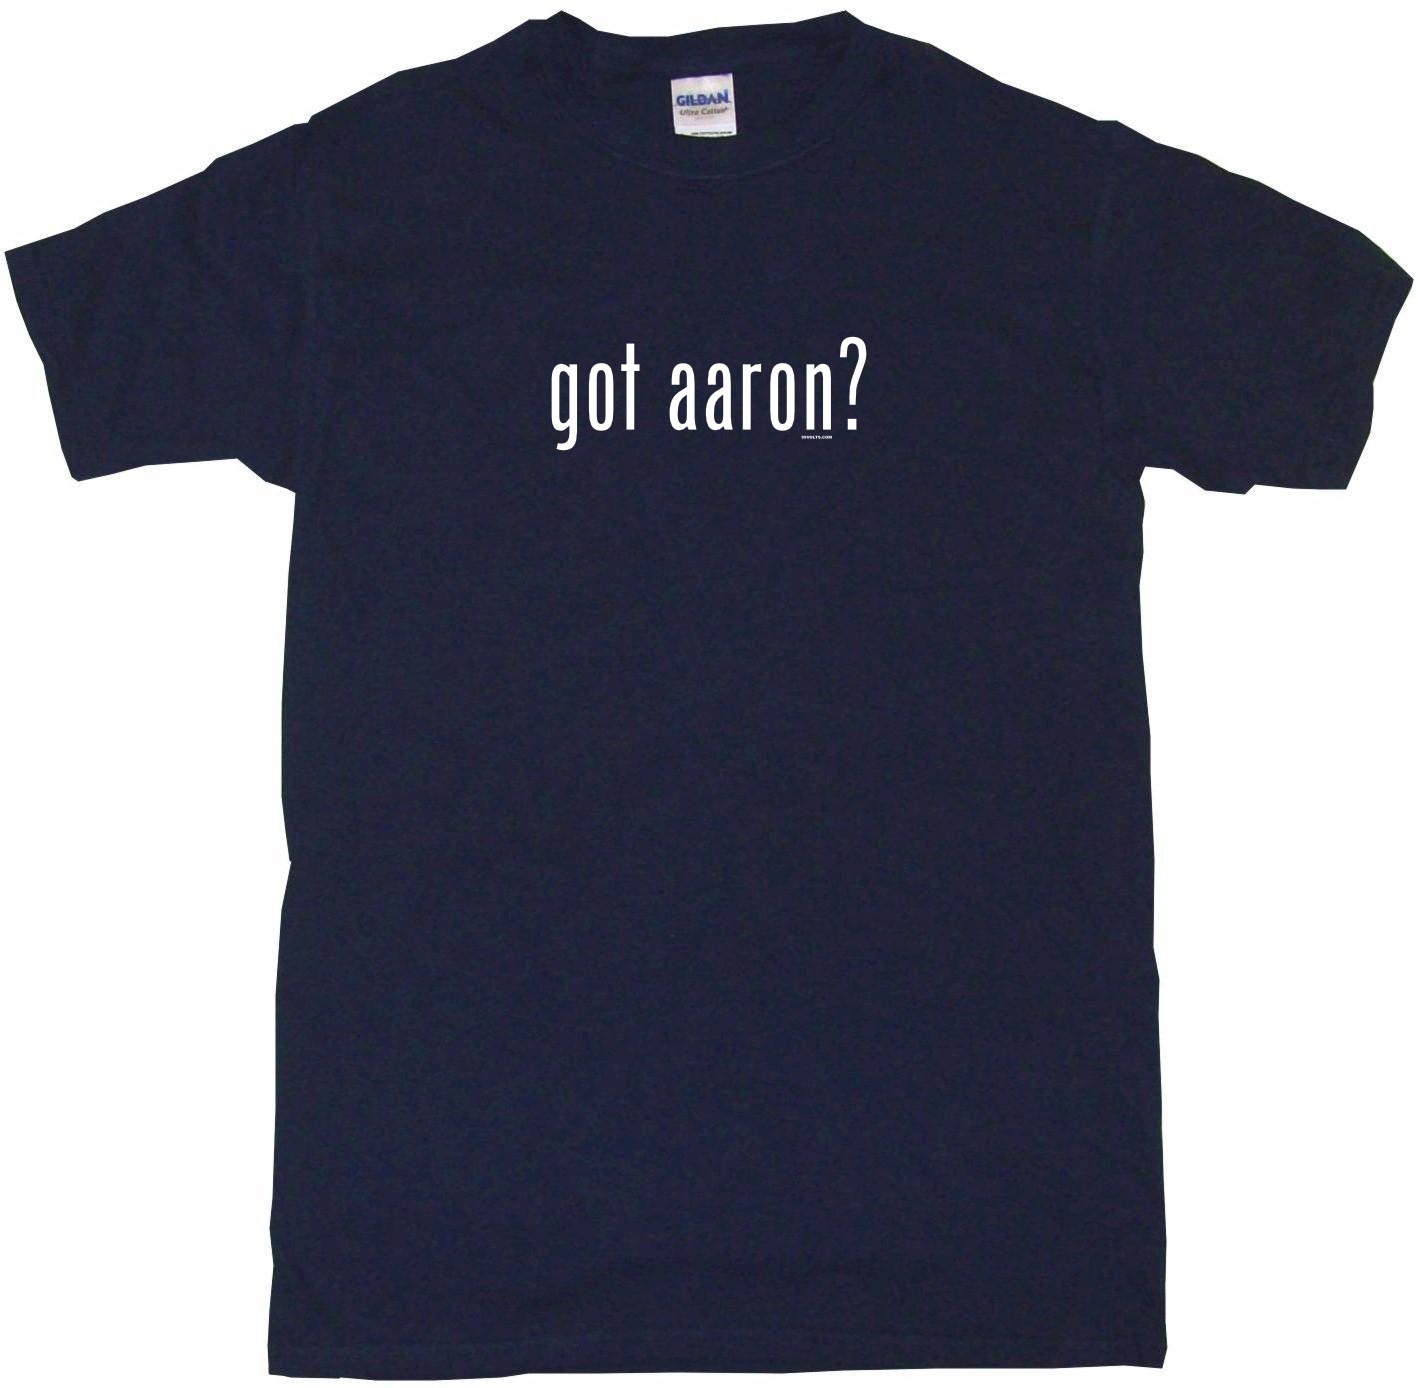 T-Shirt Tee Shirt Gildan Free Sticker S M L XL 2XL 3XL Cotton Got Aaron Carter 